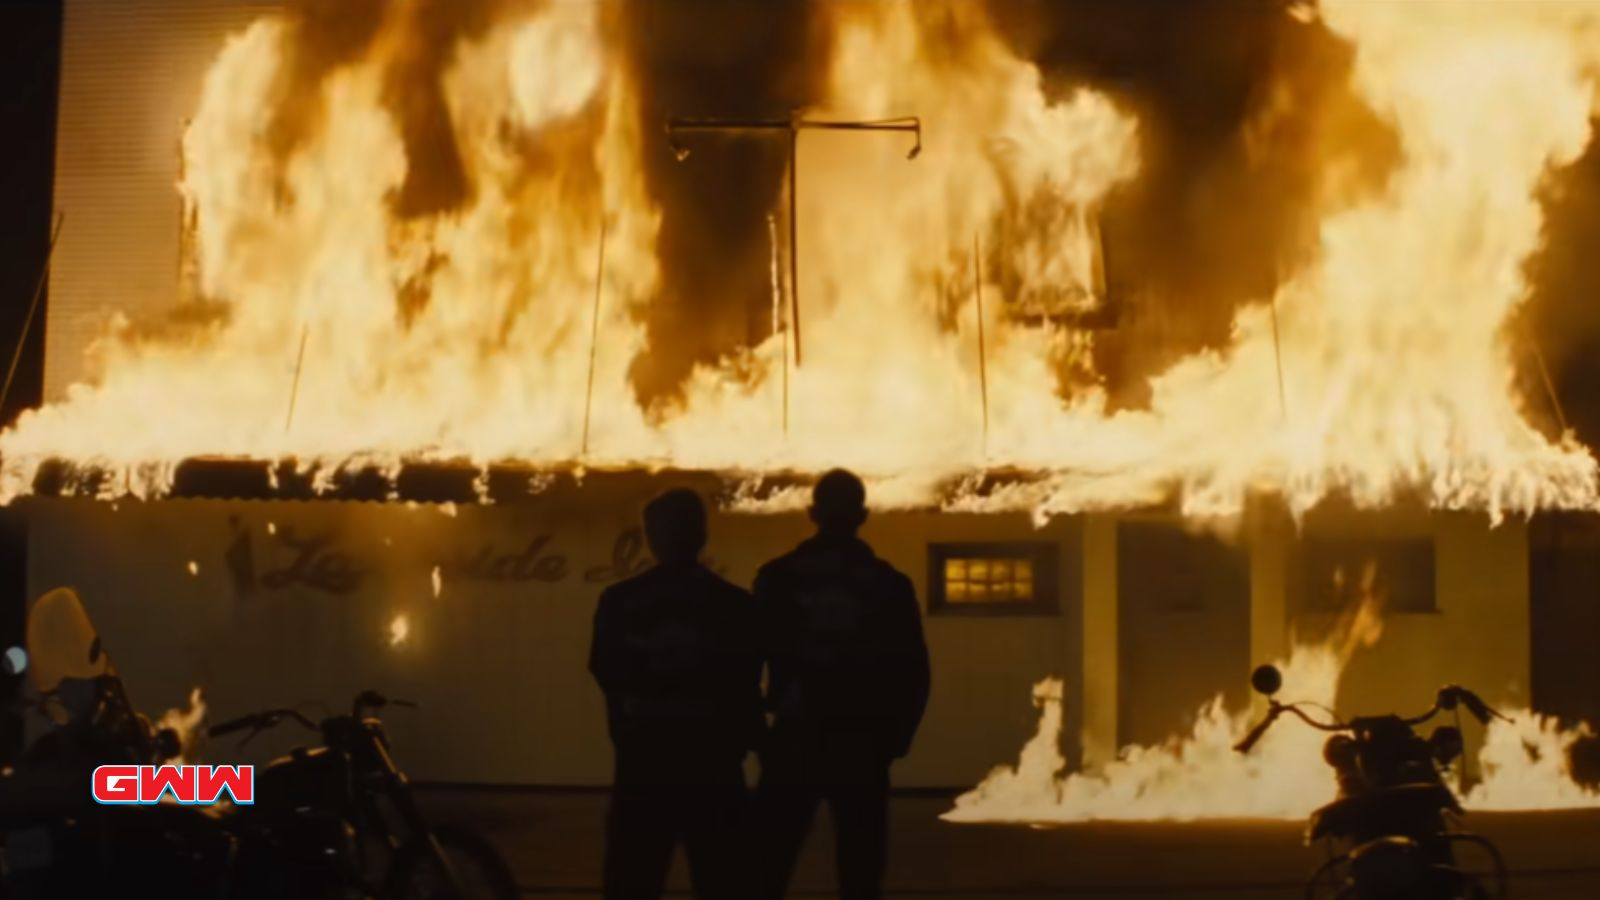 Edificio envuelto en llamas por la noche, siluetas de dos personas mirando.